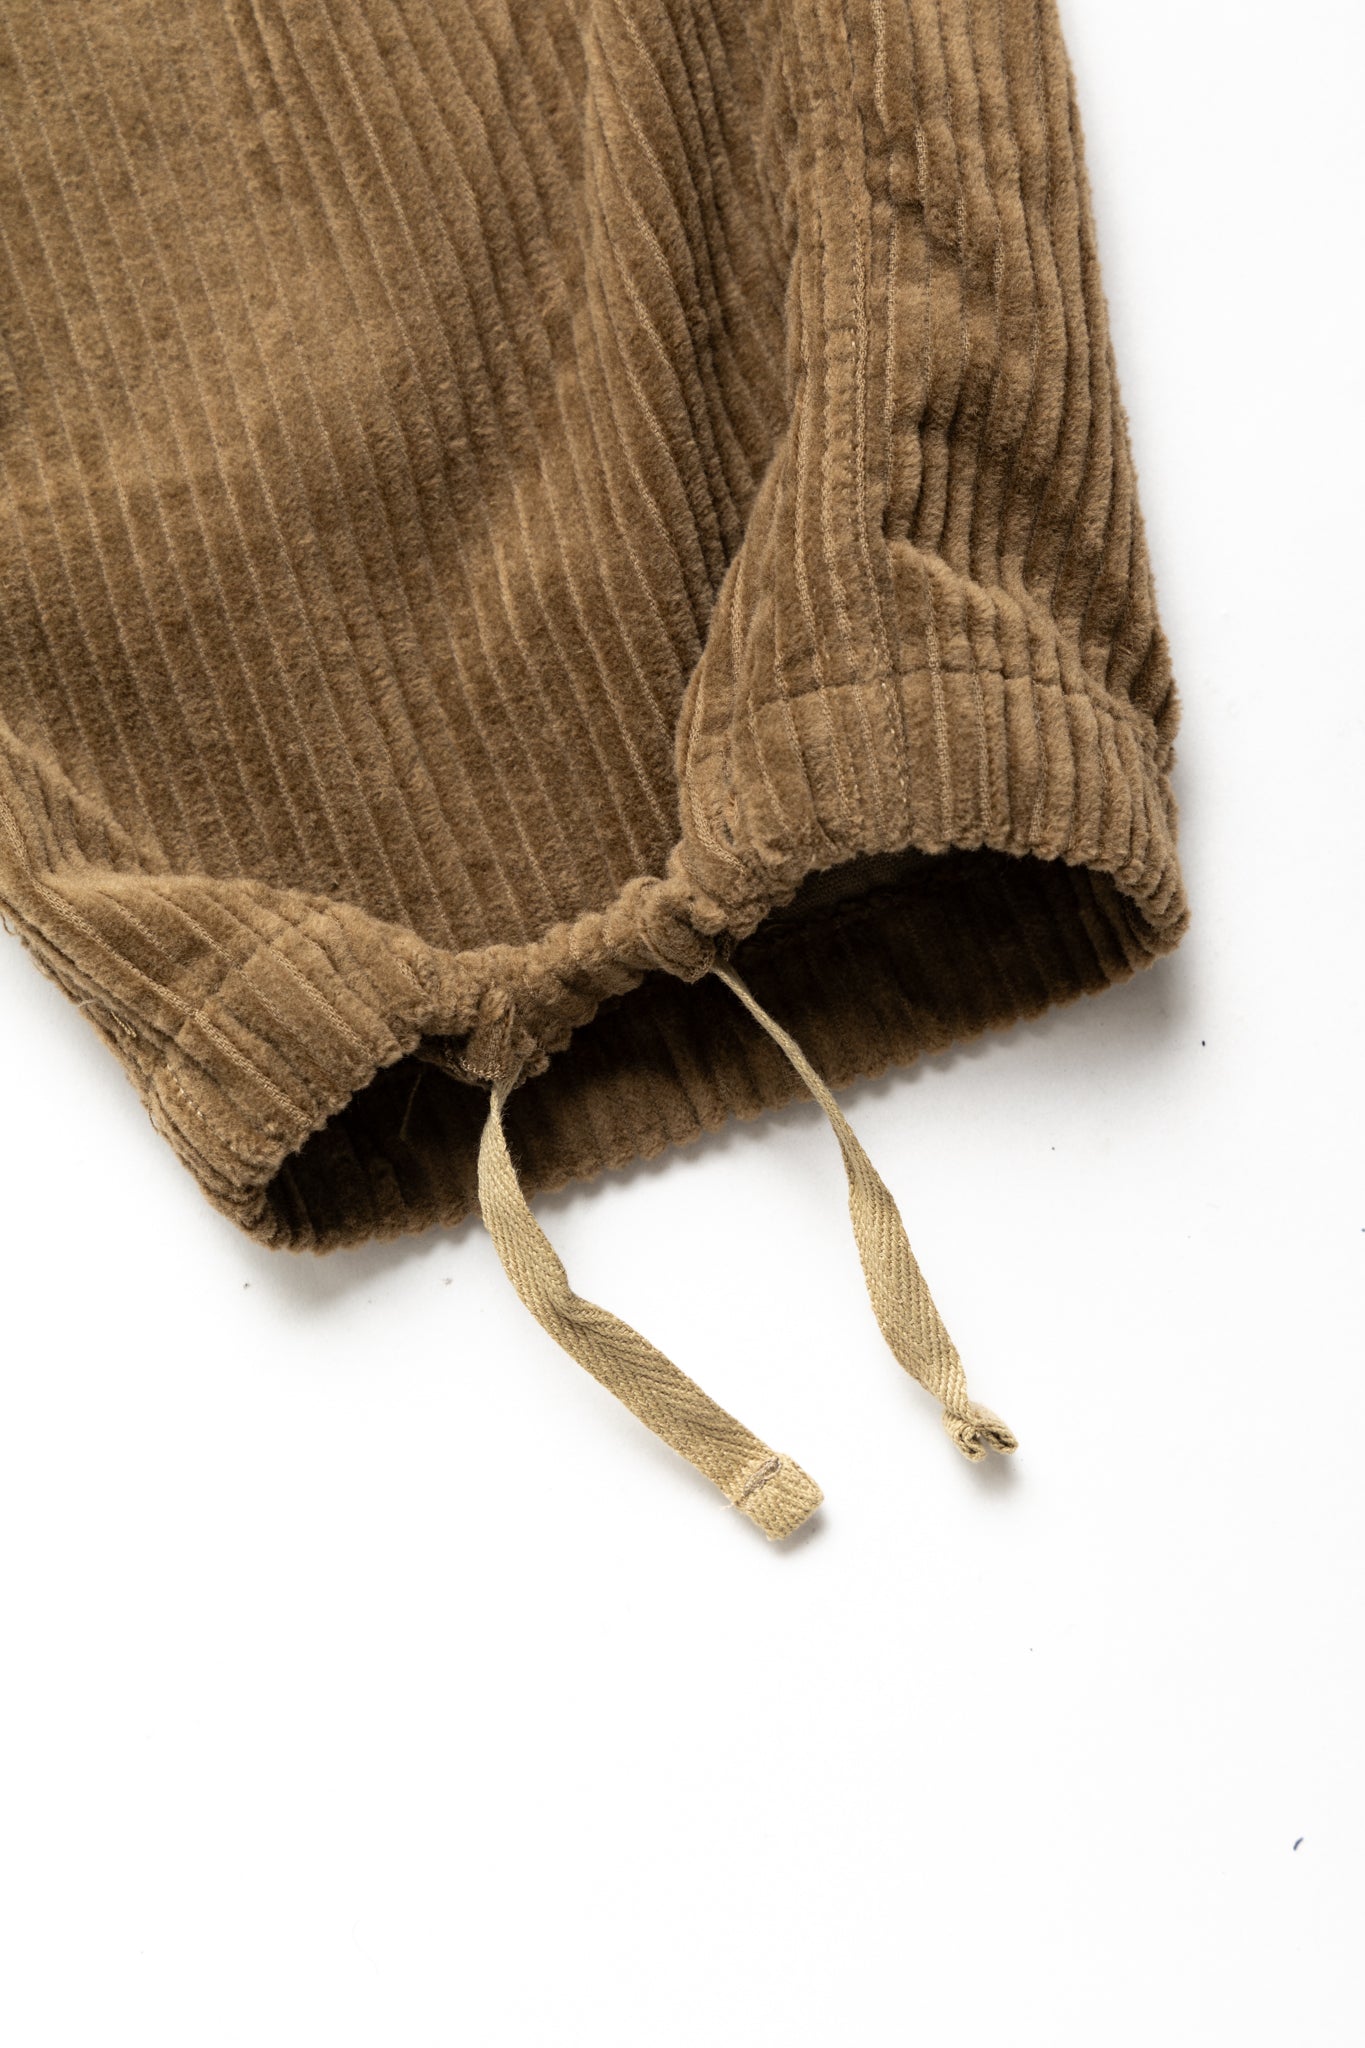 FA Pant Cotton 4.5W Corduroy - Khaki